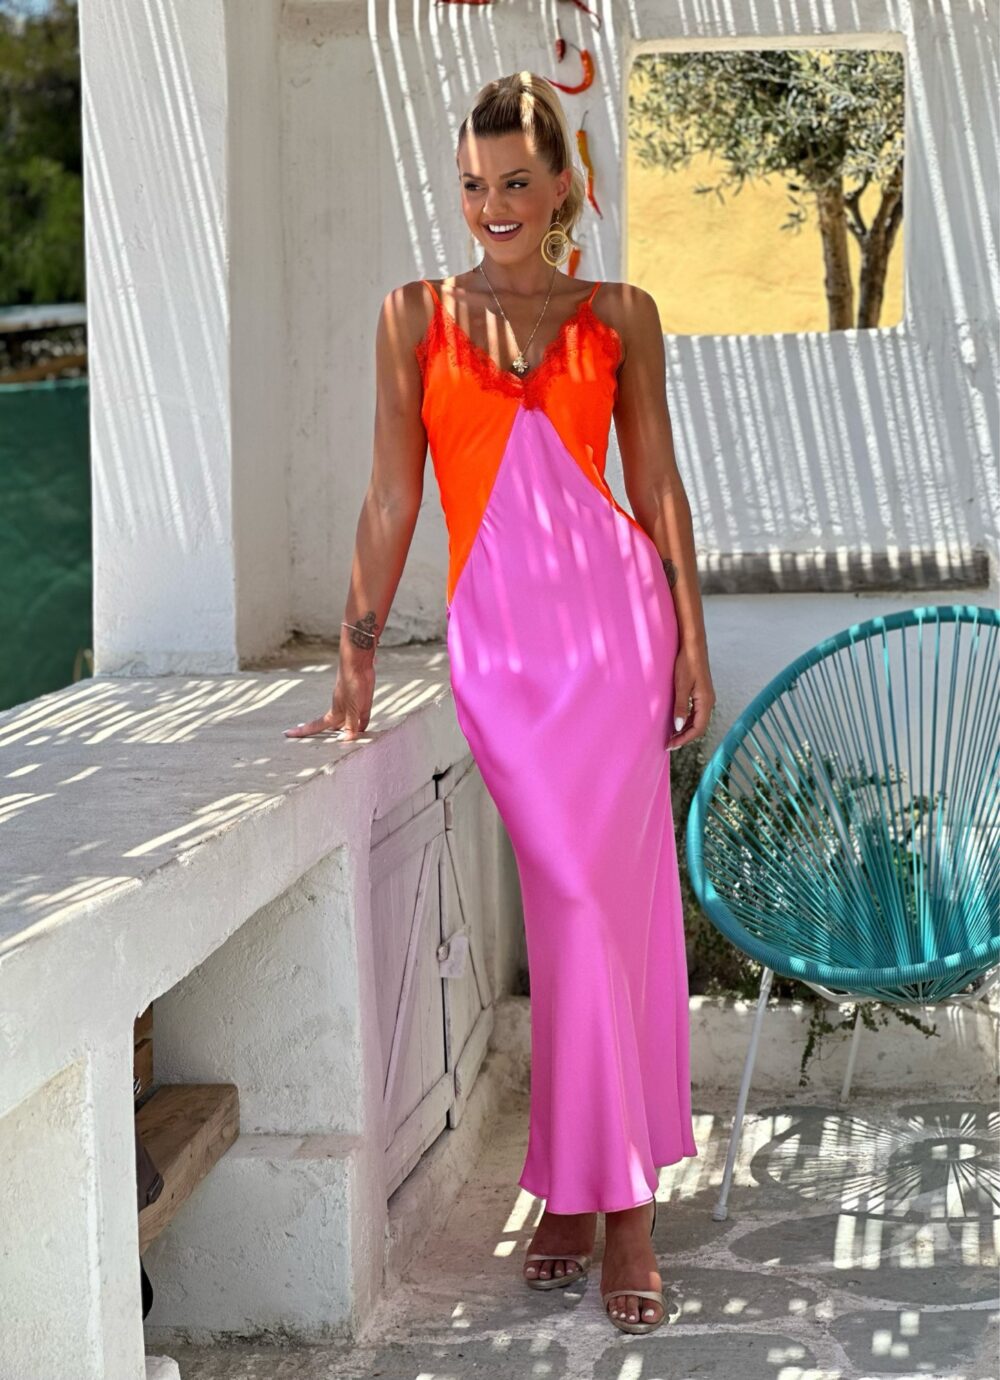 φορεμα lingerie φουξια με πορτοκαλι σατεν